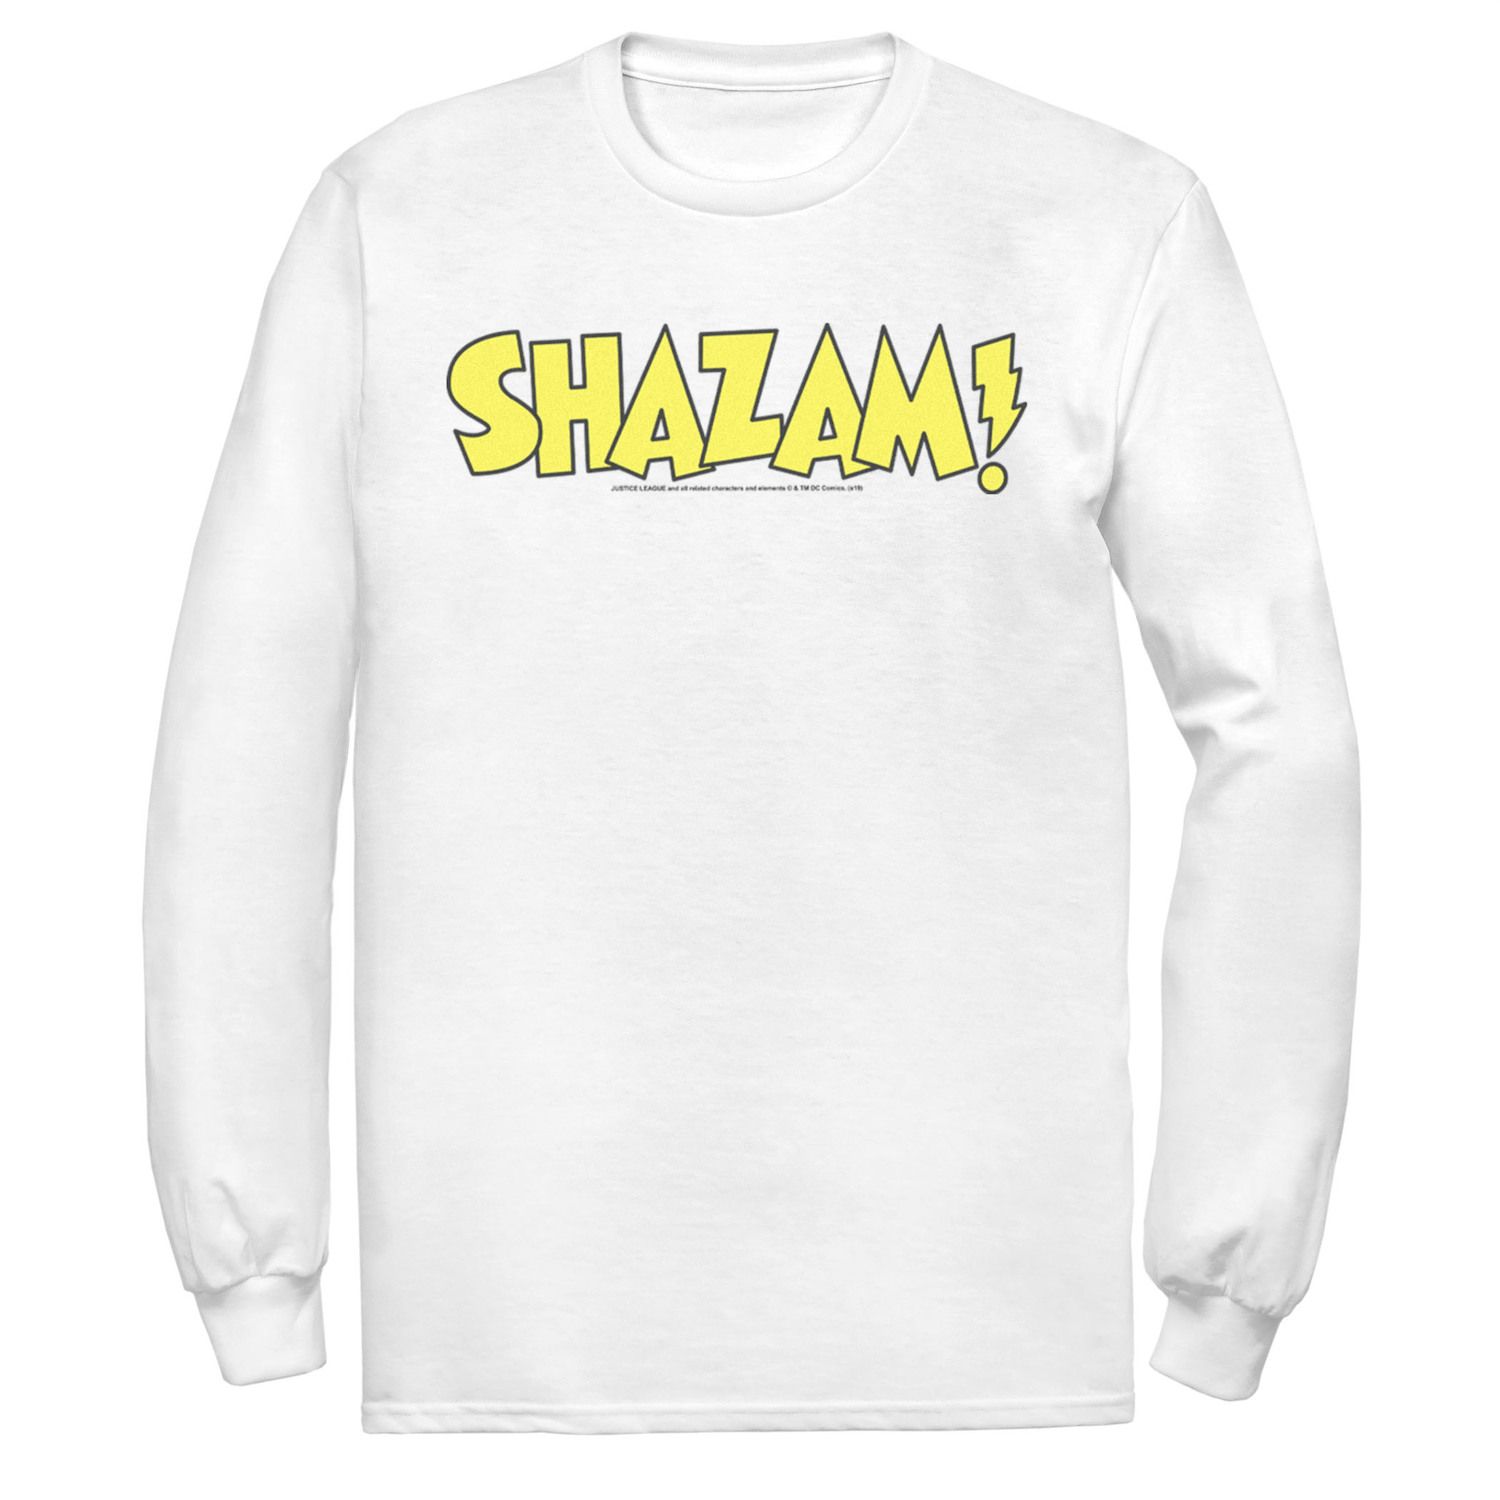 цена Мужская футболка с жирным текстовым логотипом DC Comics Shazam